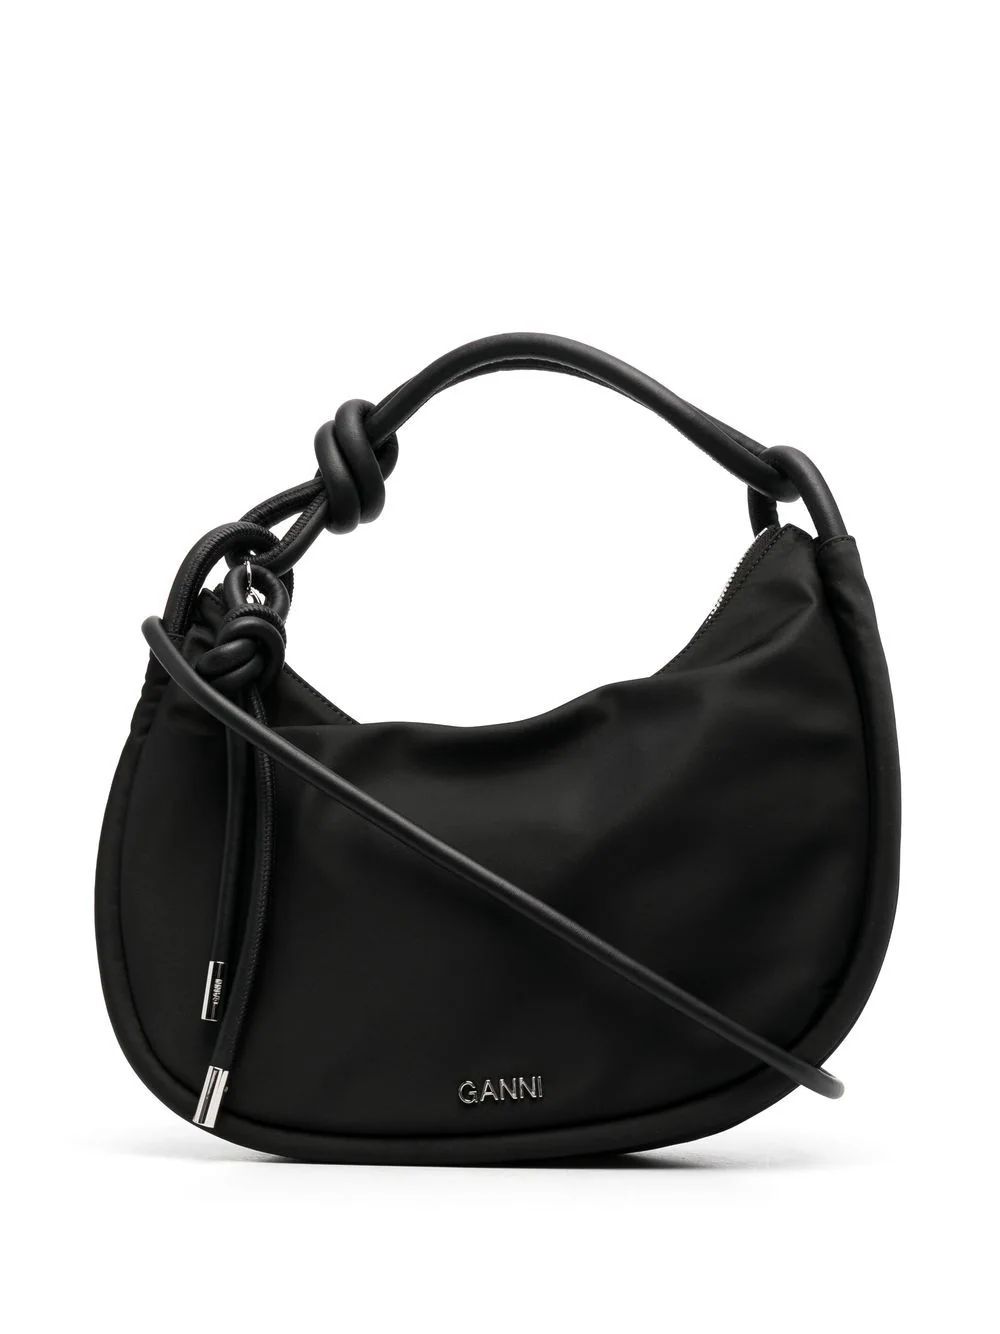 GANNI Knotted top-handle Bag - Farfetch | Farfetch Global